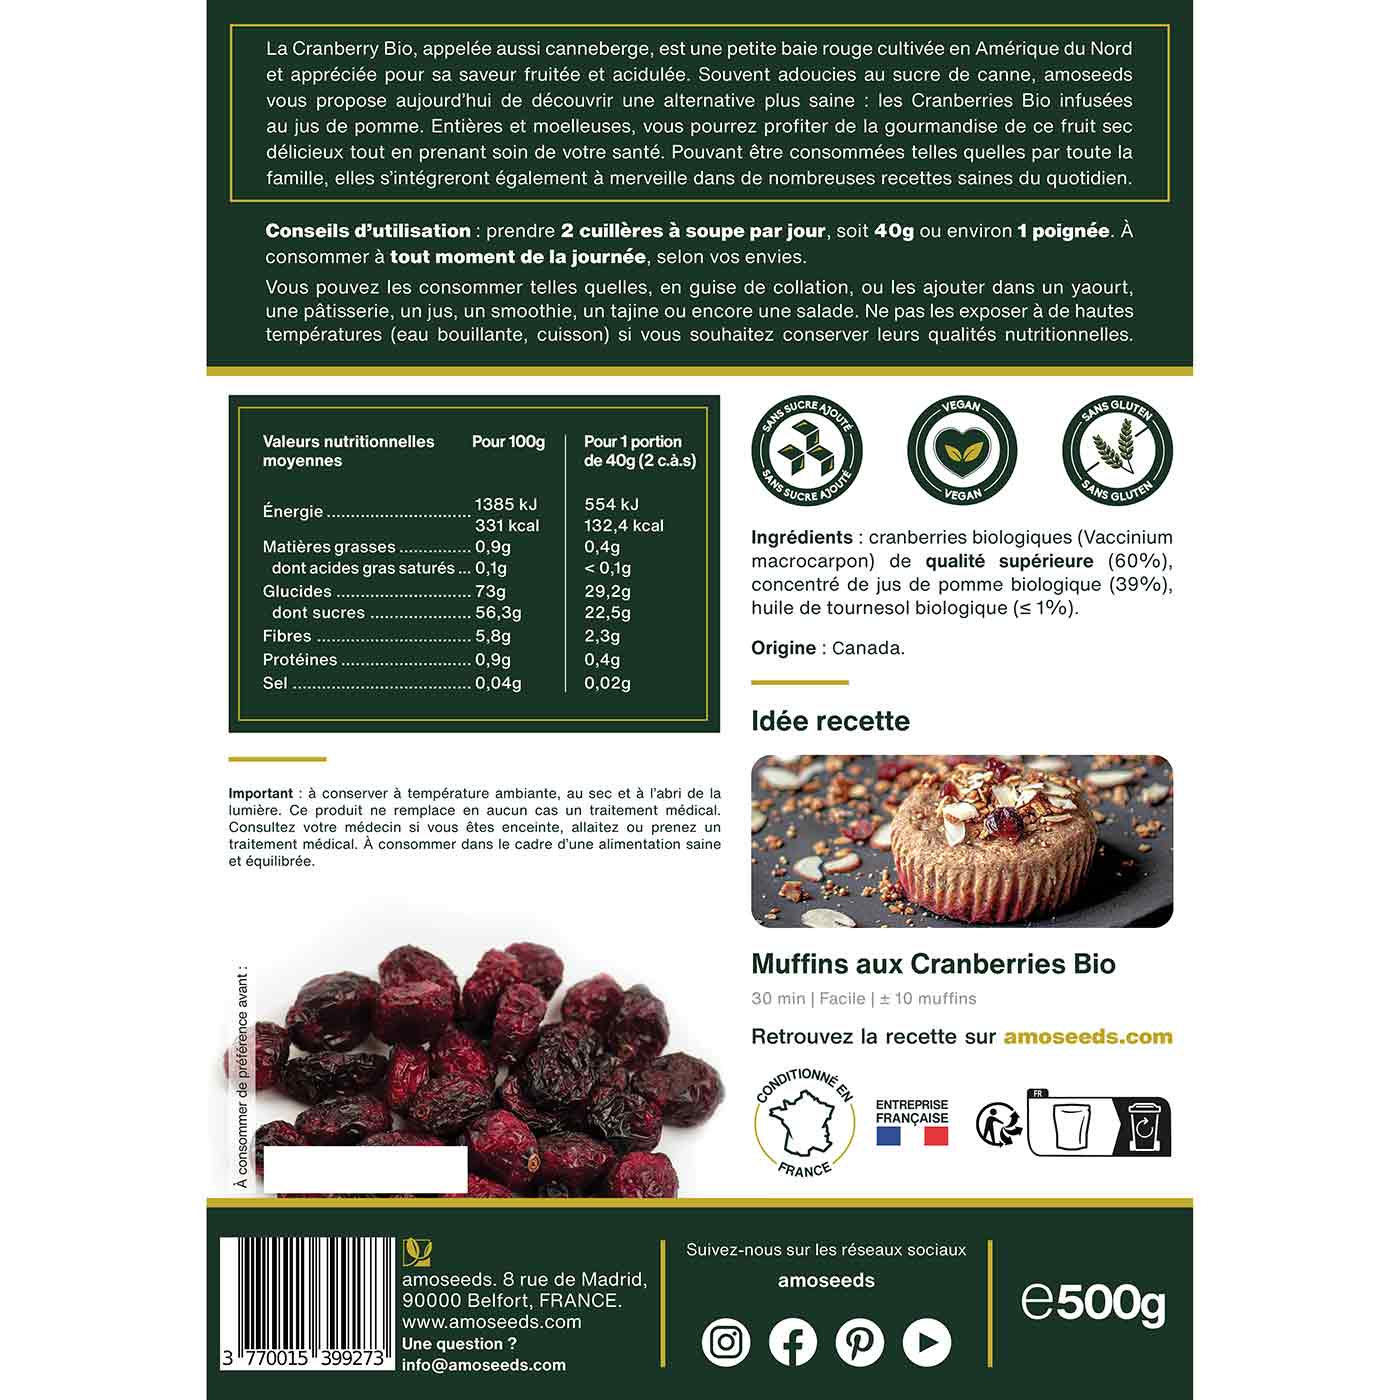 Cranberries Entières Bio 500G amoseeds specialiste des super aliments Bio